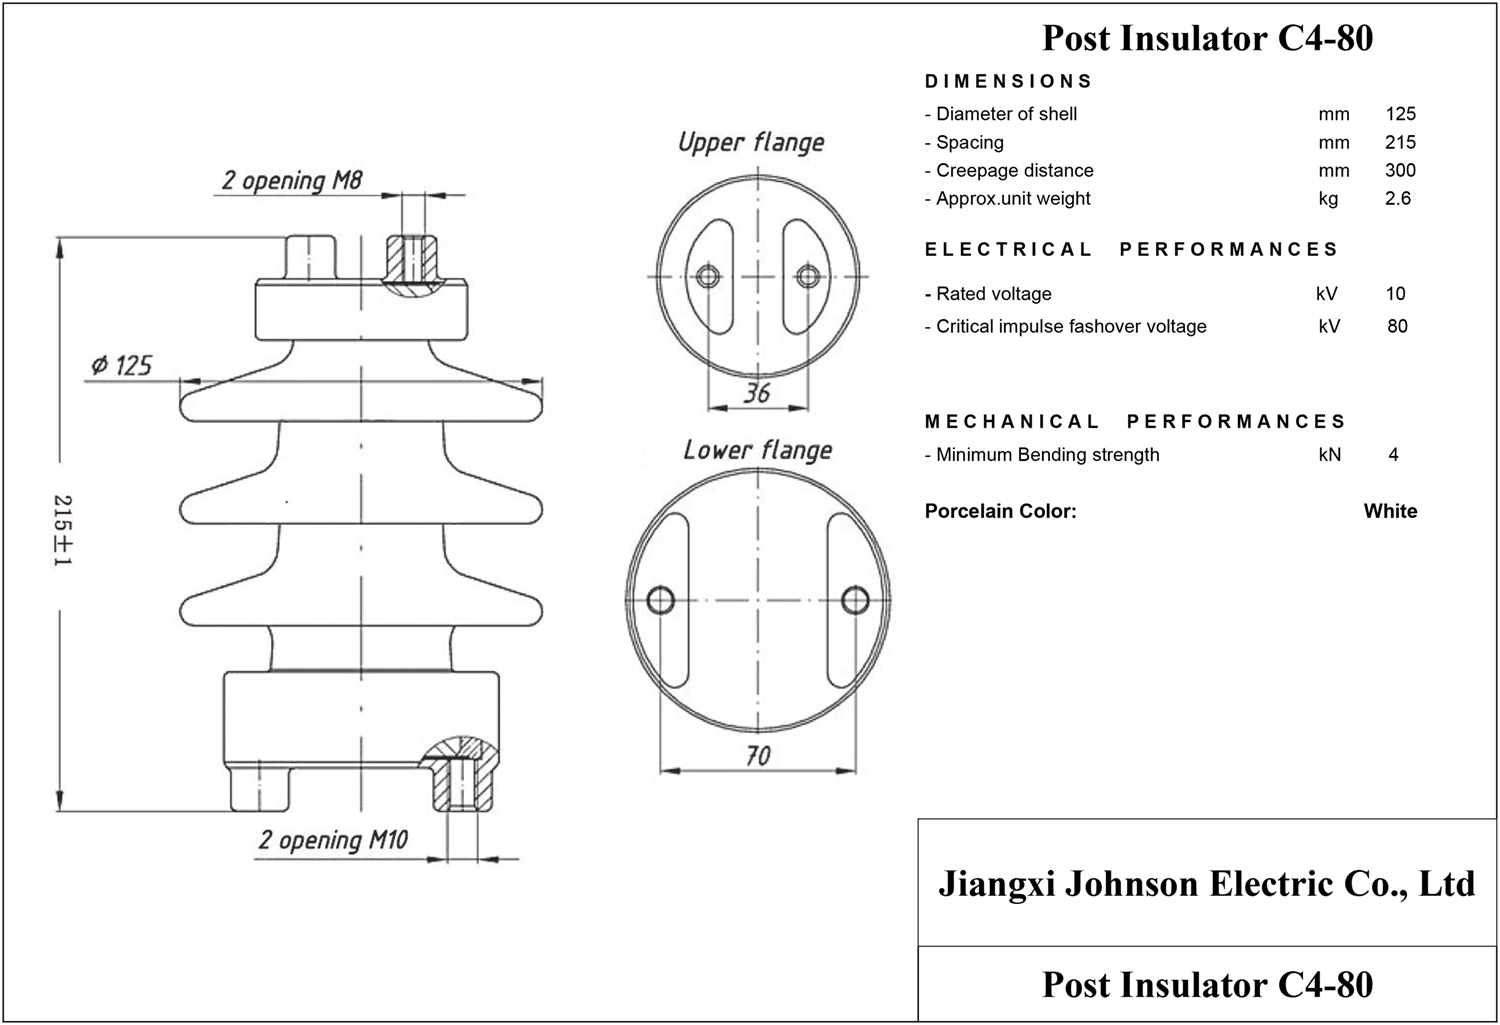 Post insulator C4-80